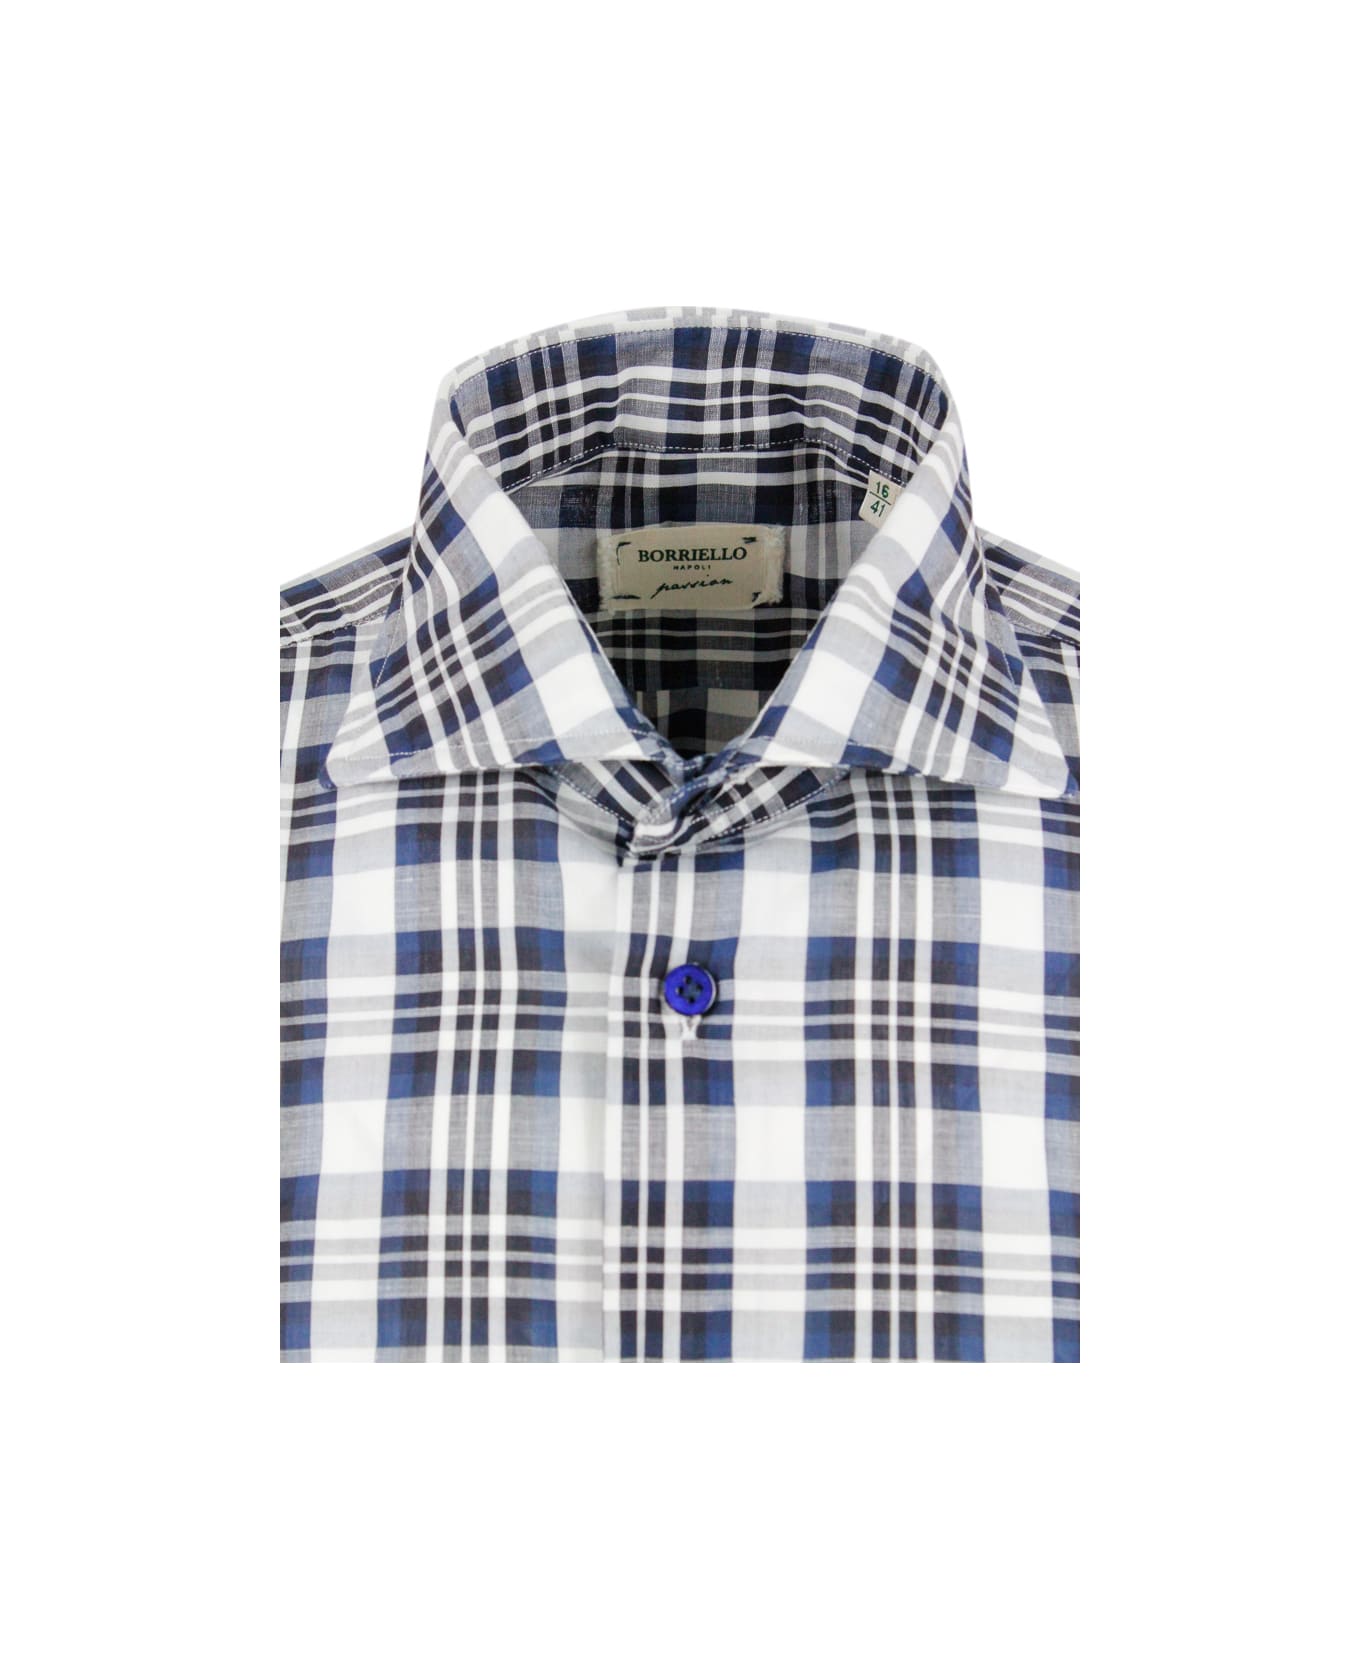 Borriello Napoli Checked Shirt In Cotton And Linen - Blu シャツ